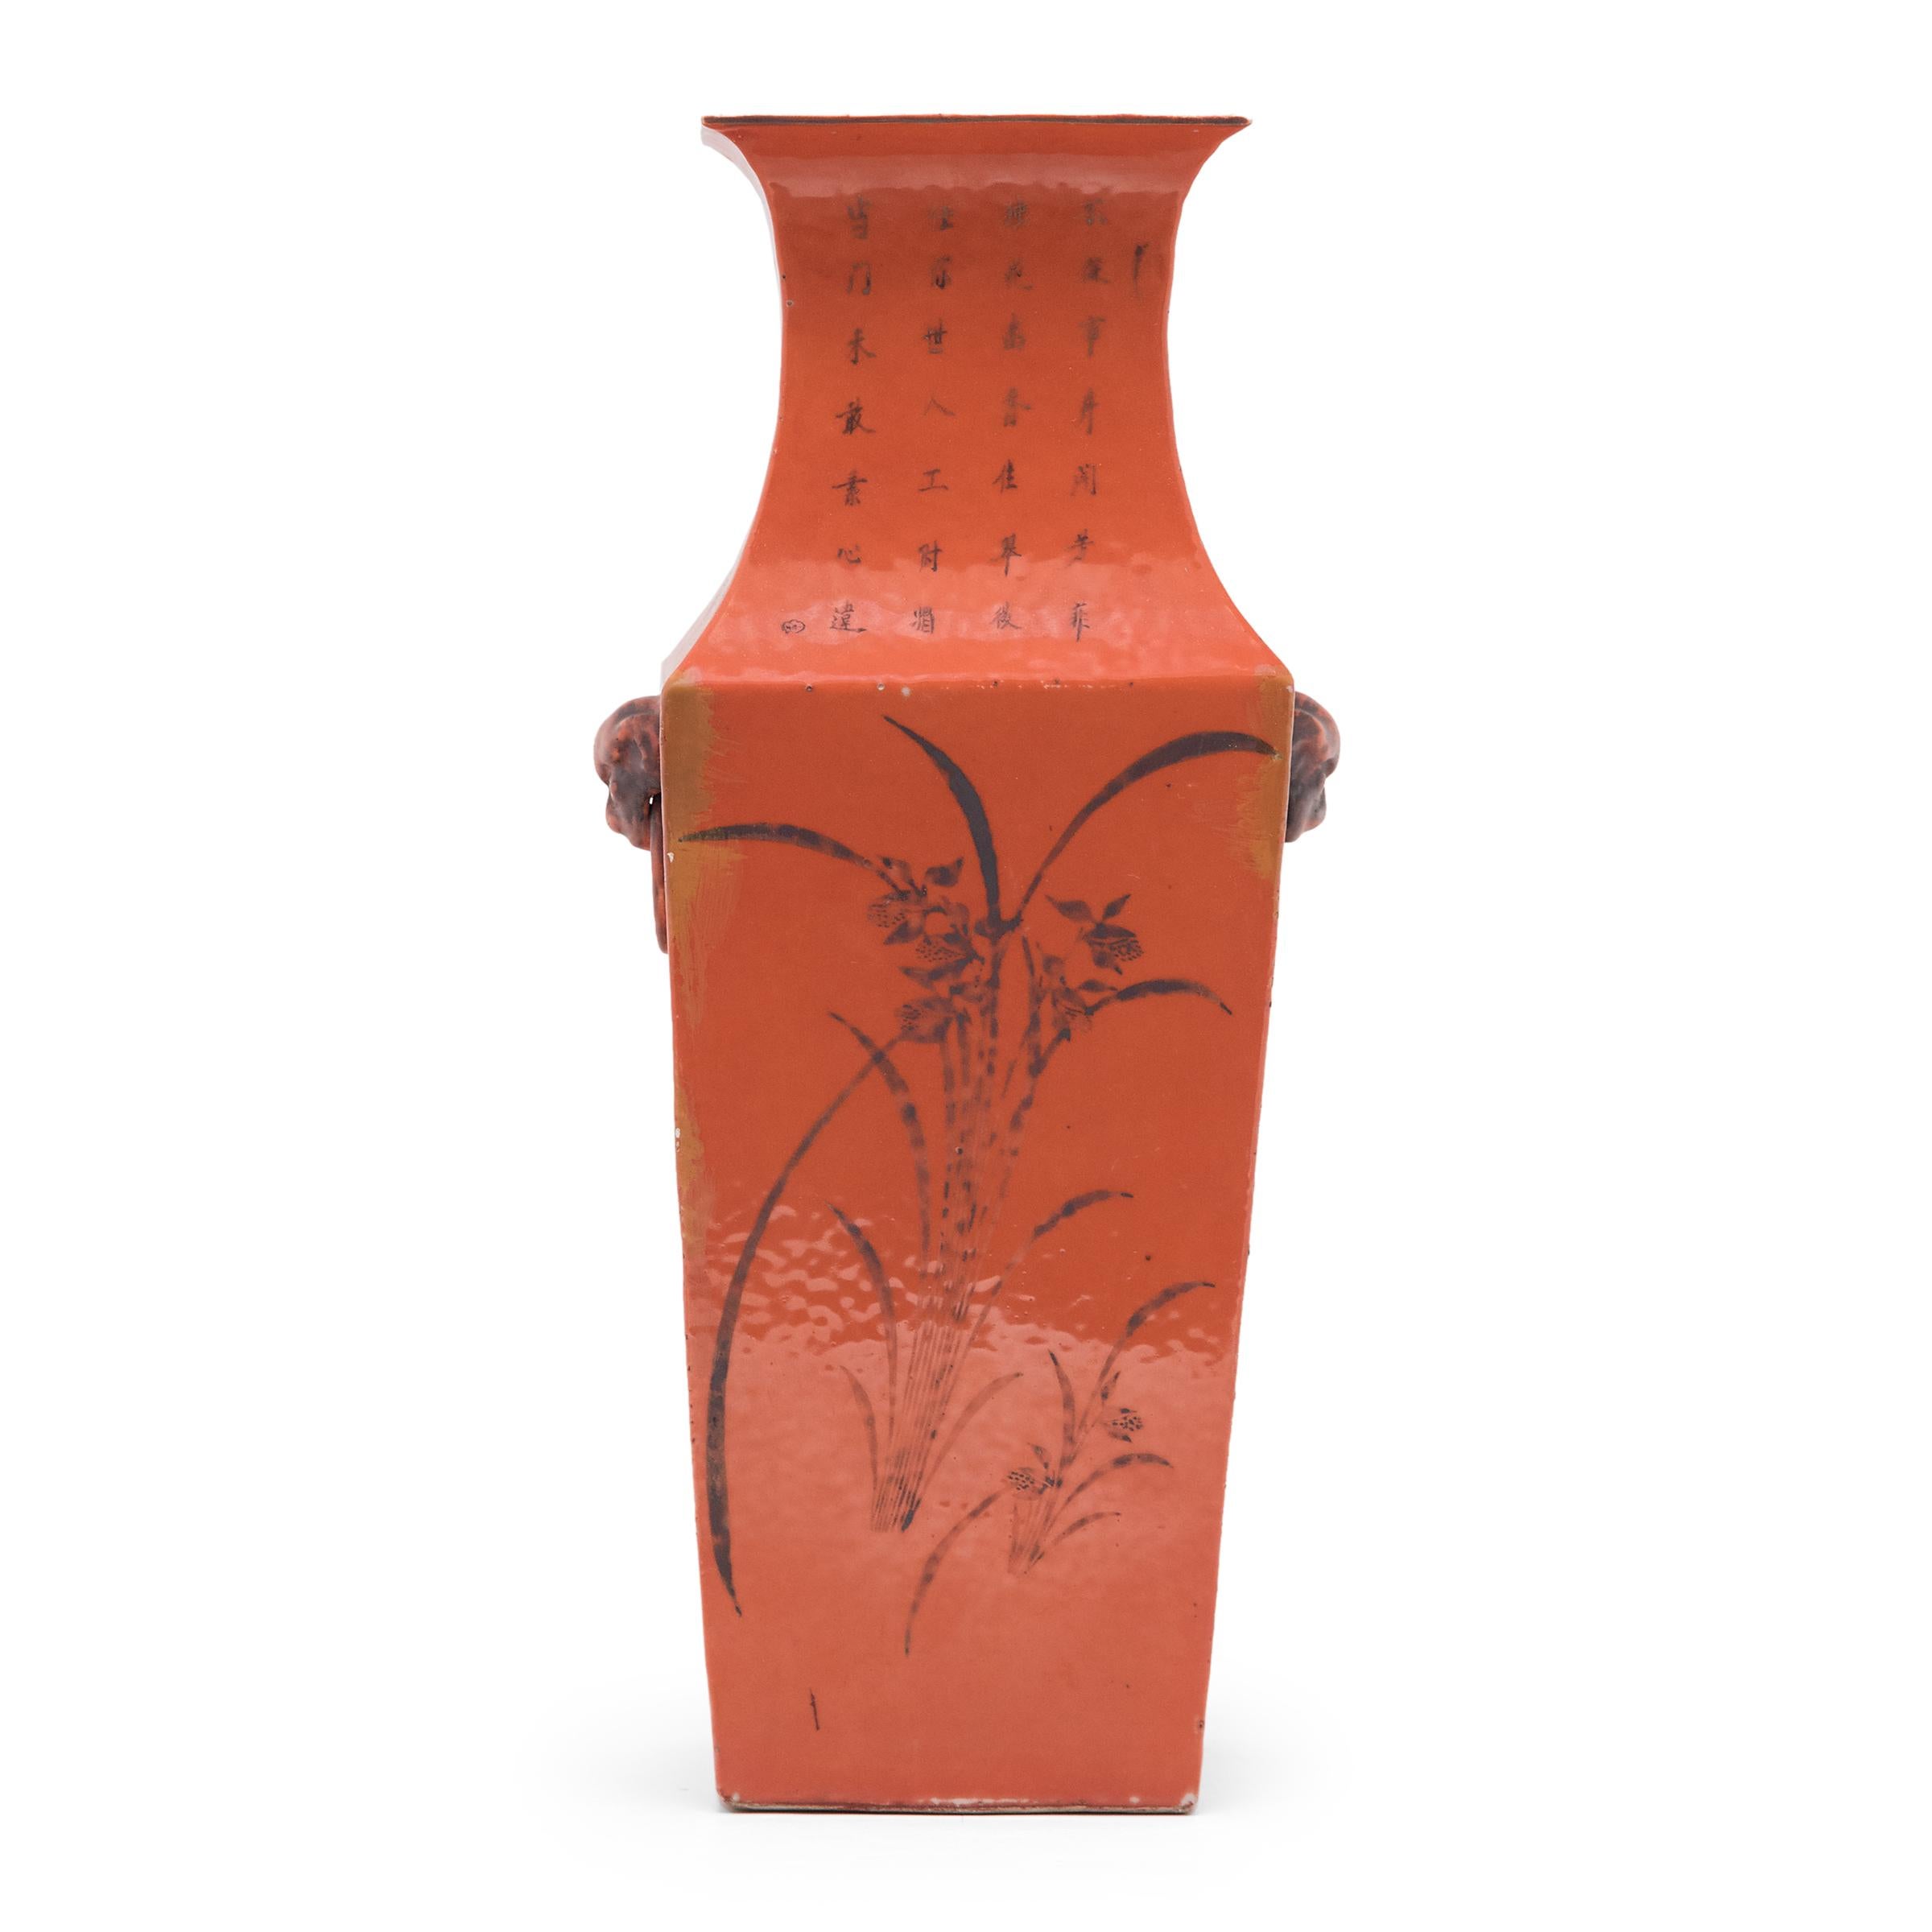 Diese quadratische Vase in leuchtender Farbe und skulpturaler Form kombiniert die jahrhundertealte Form der Phönixschwanz-Vase mit einer satten kakifarbenen Glasur, die während der Art-déco-Bewegung des frühen 20. Jahrhunderts populär wurde. Die